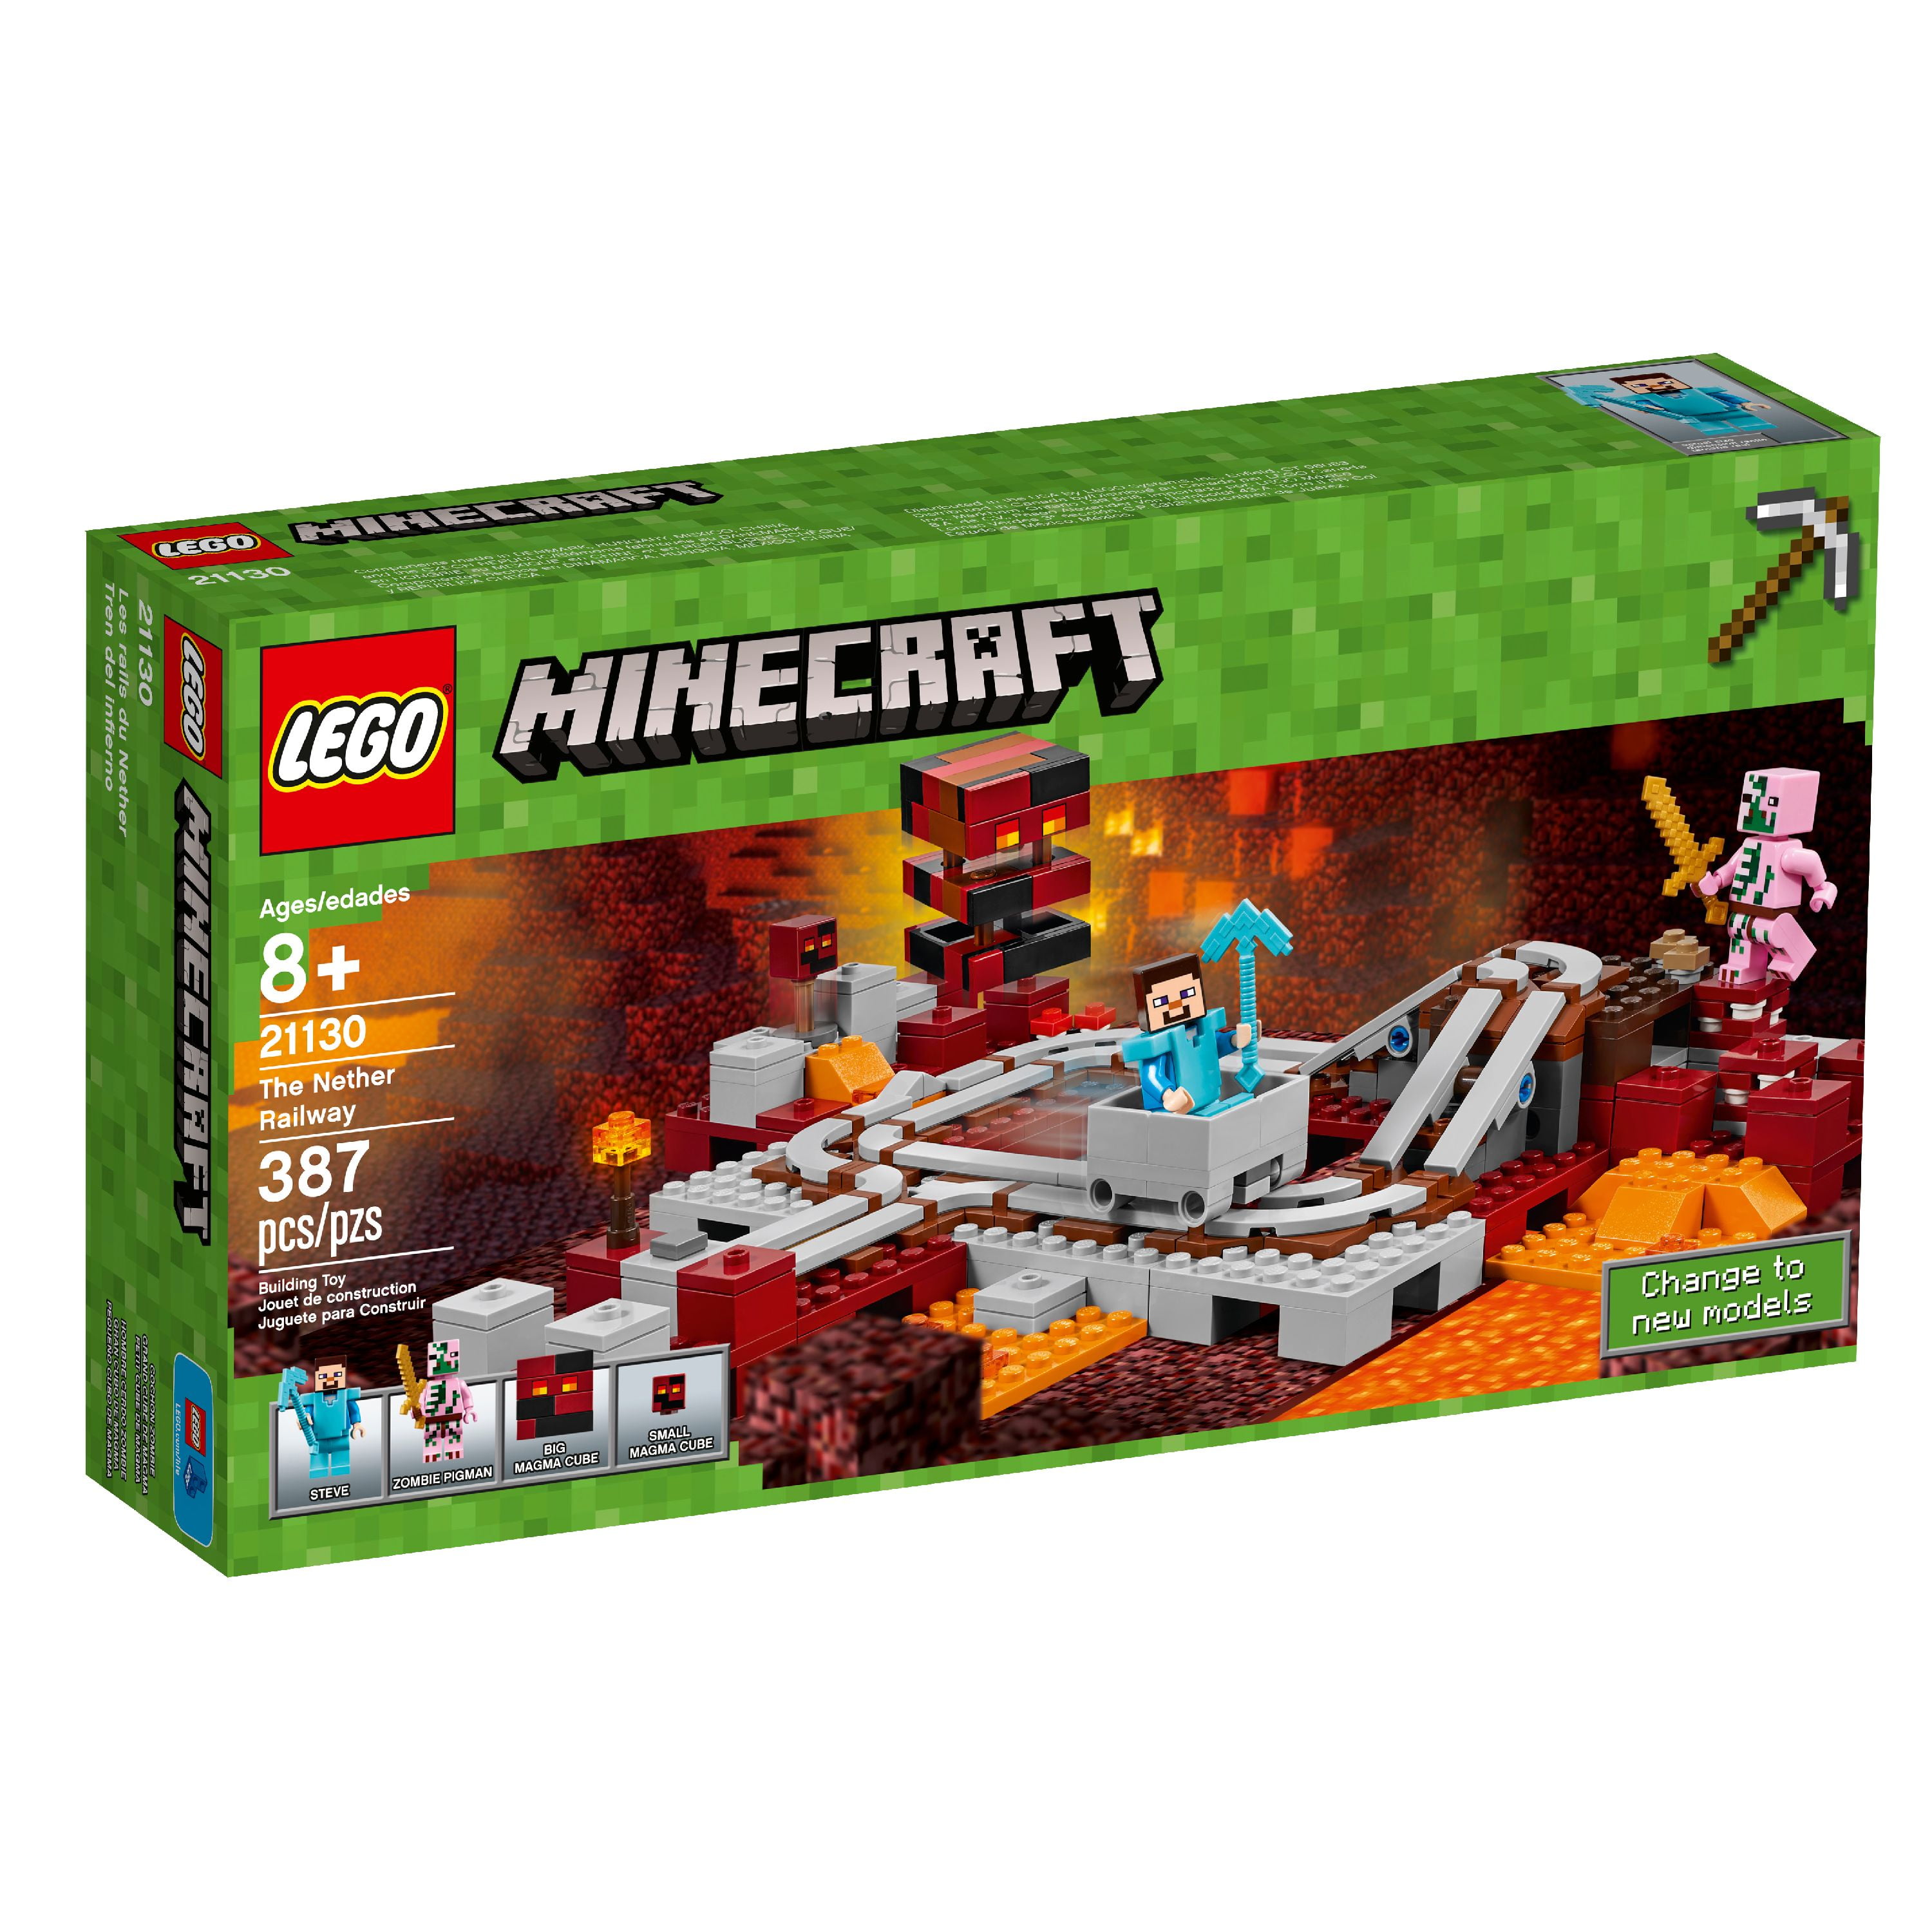 LEGO Nether Railway 21130 (387 Pieces) - Walmart.com